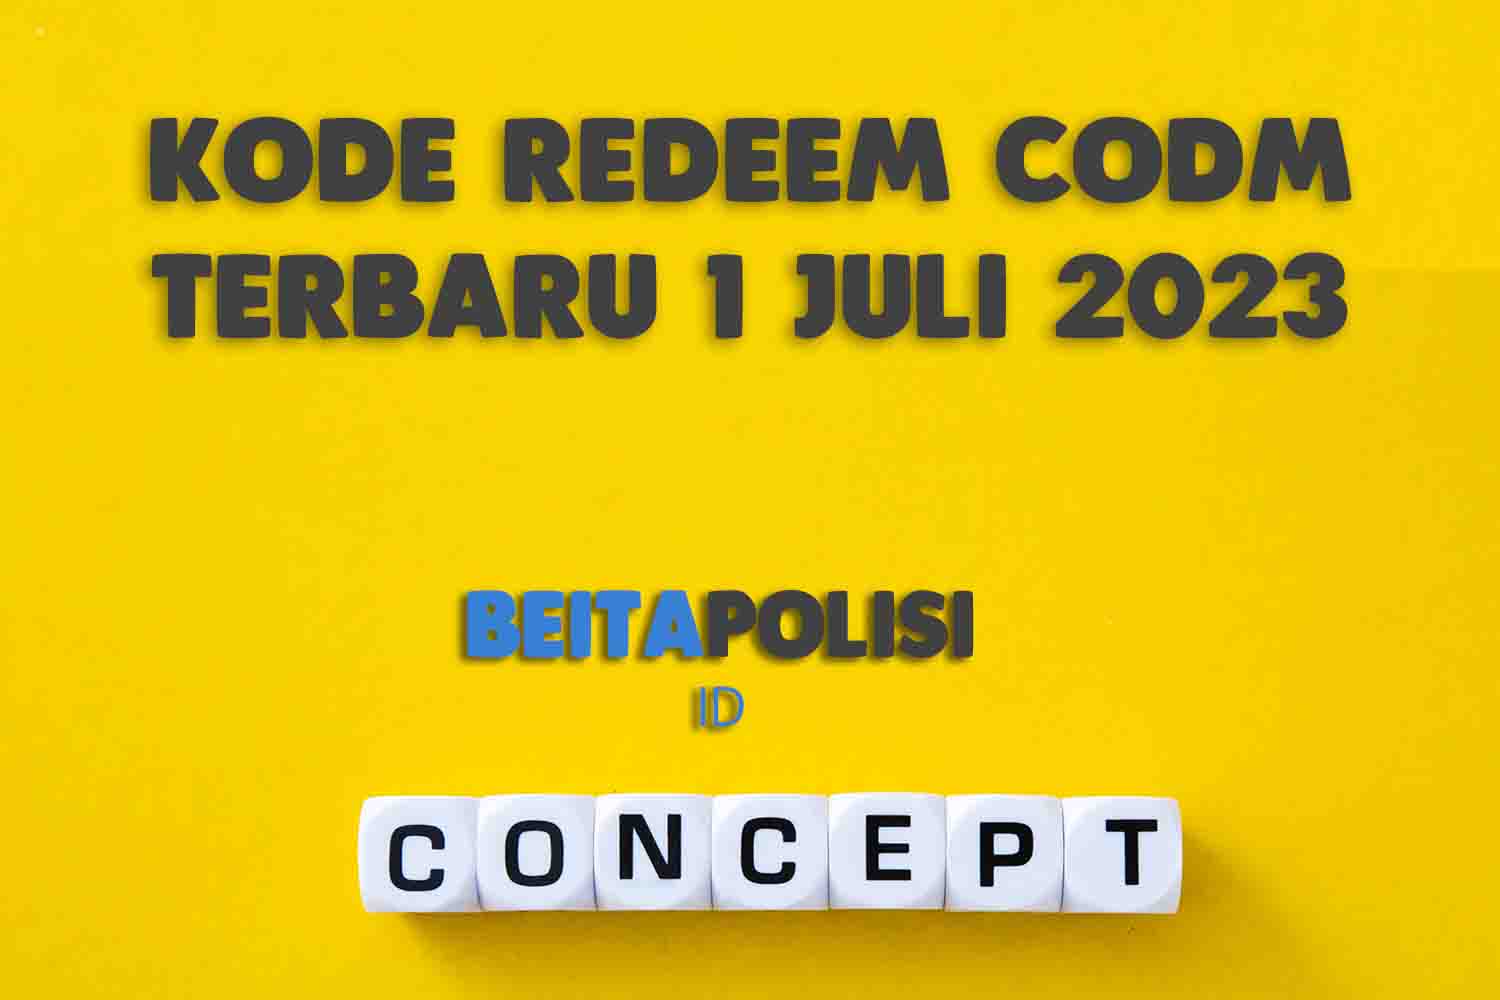 Kode Redeem Codm Terbaru 1 Juli 2023